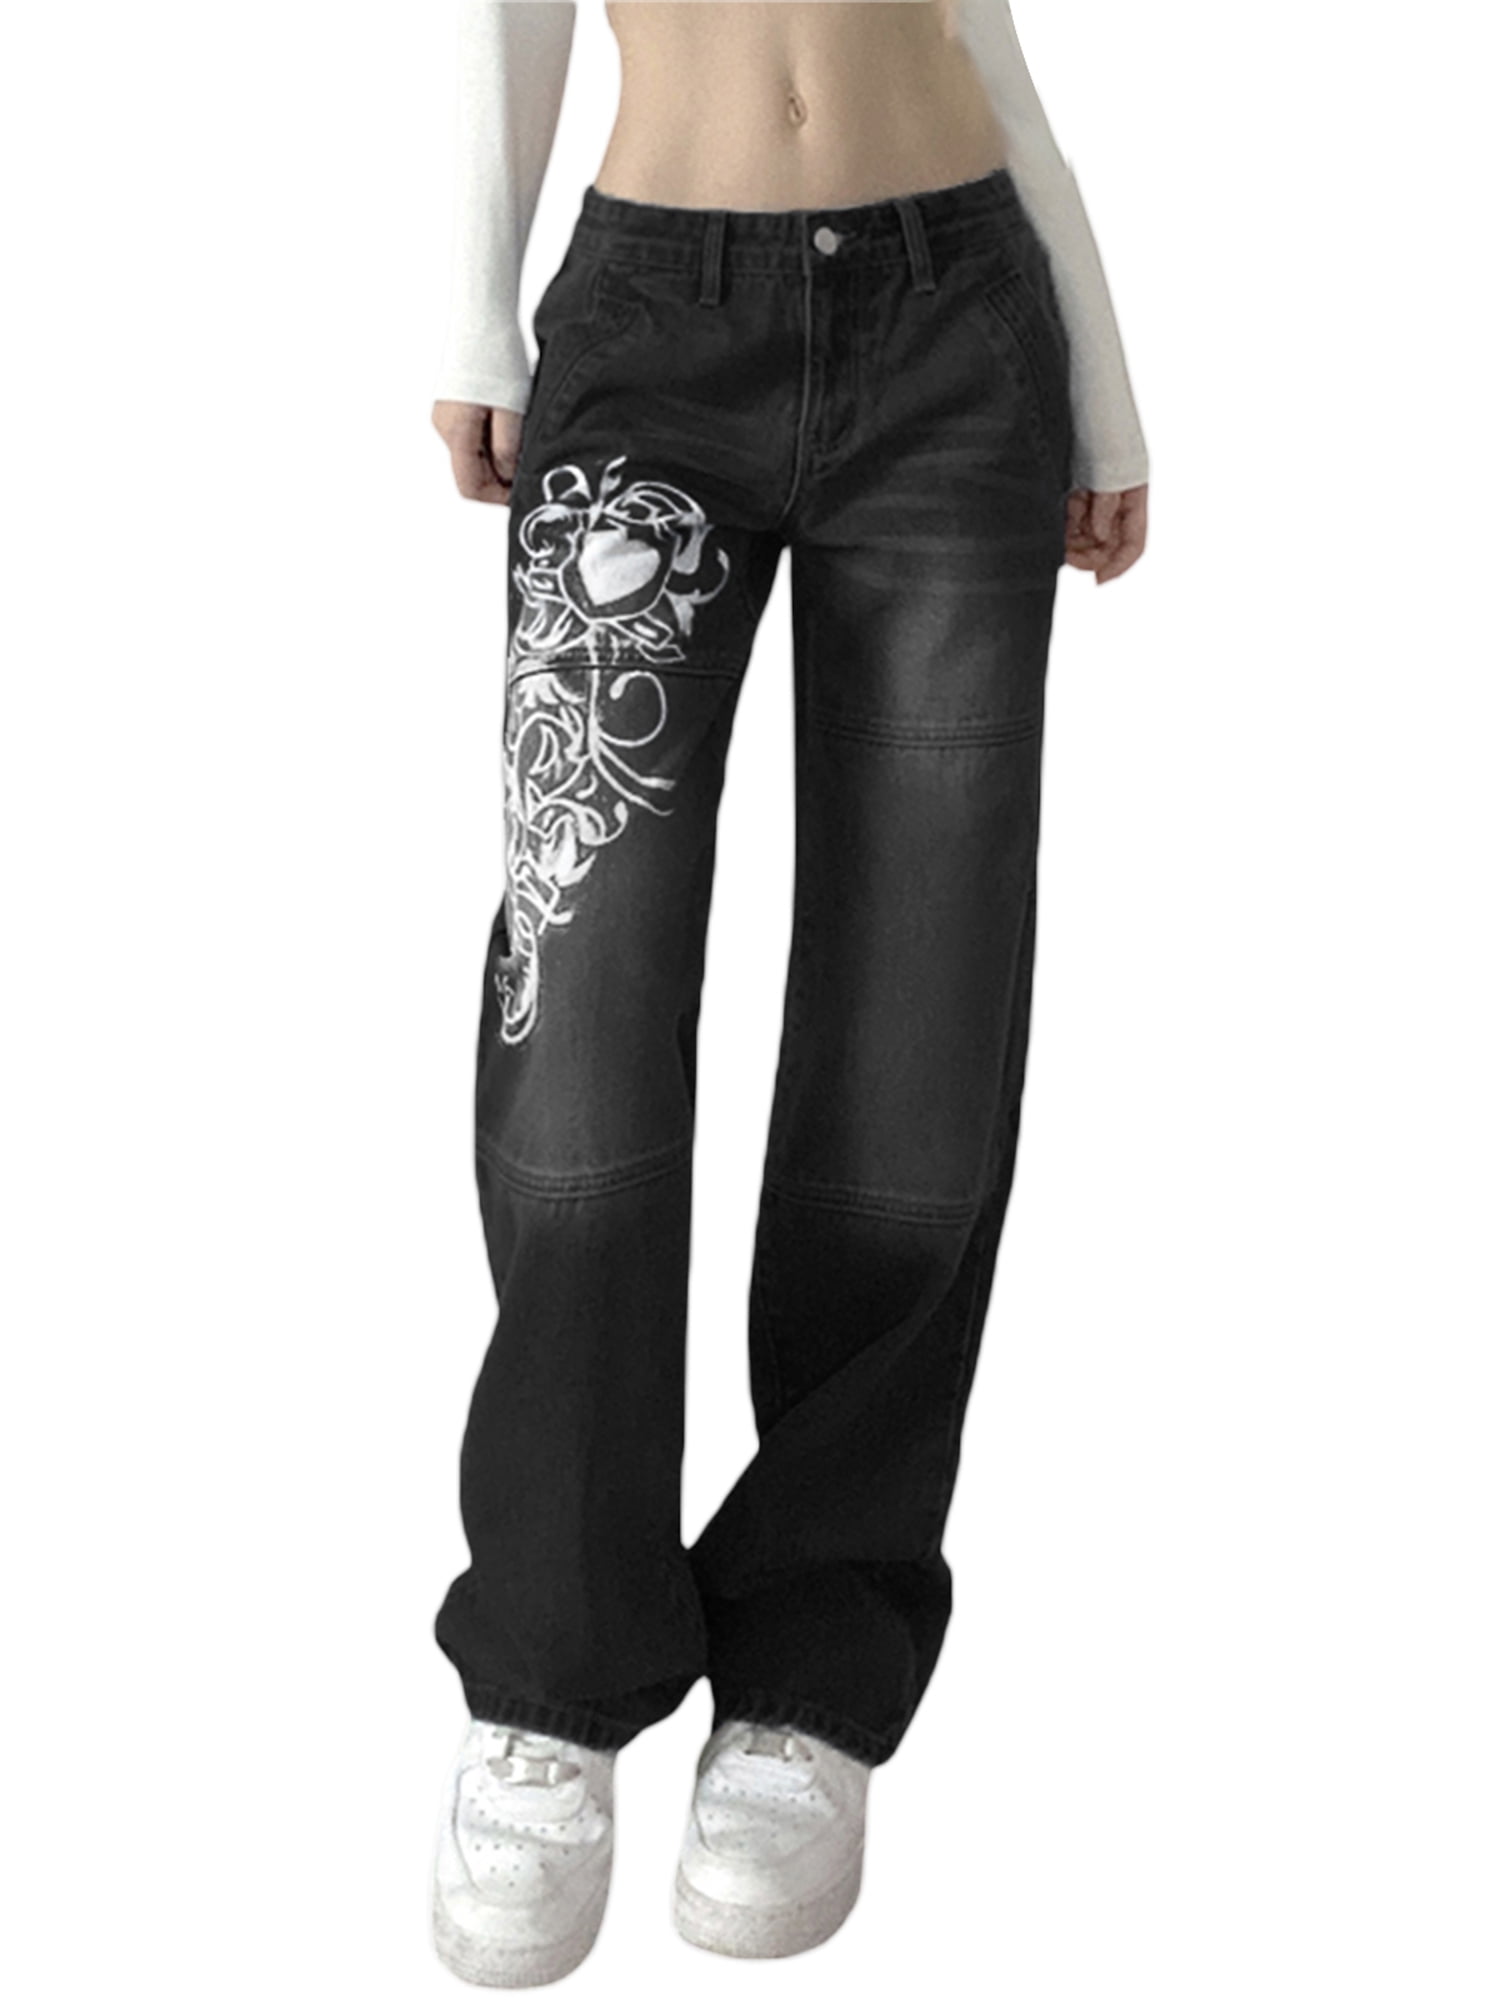 Boyfriend Style Streetwear Baggy Jeans Women Denim Trousers High Waist Y2k  Vintage Washed Distressed Wide Leg